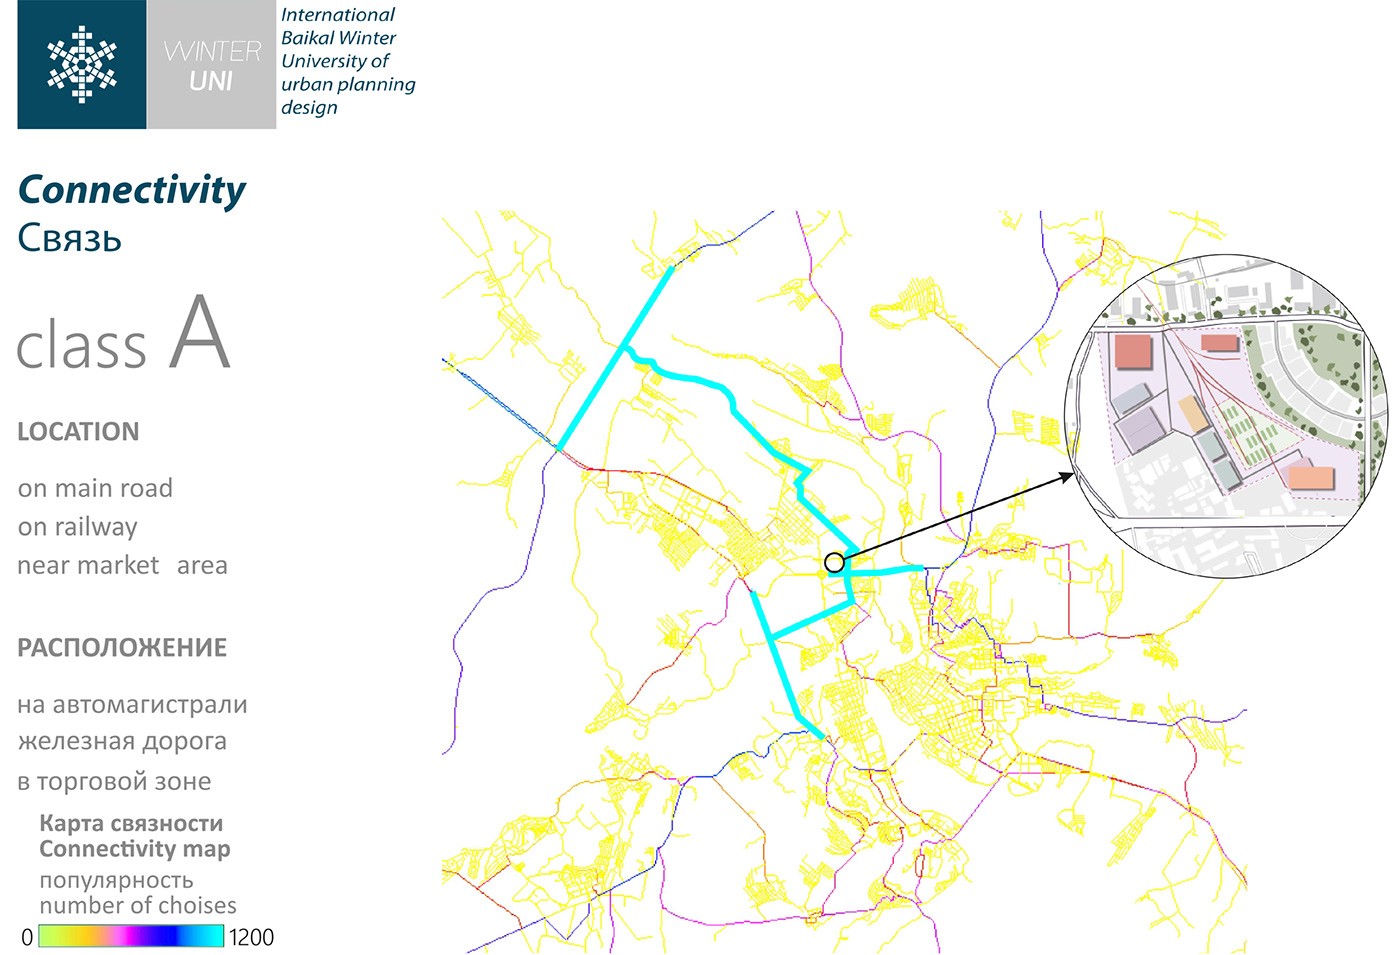 توسعه مجدد مناطق ناراحت کننده (ژیلکینو) |  آزمایشگاه طراحی شهری 53